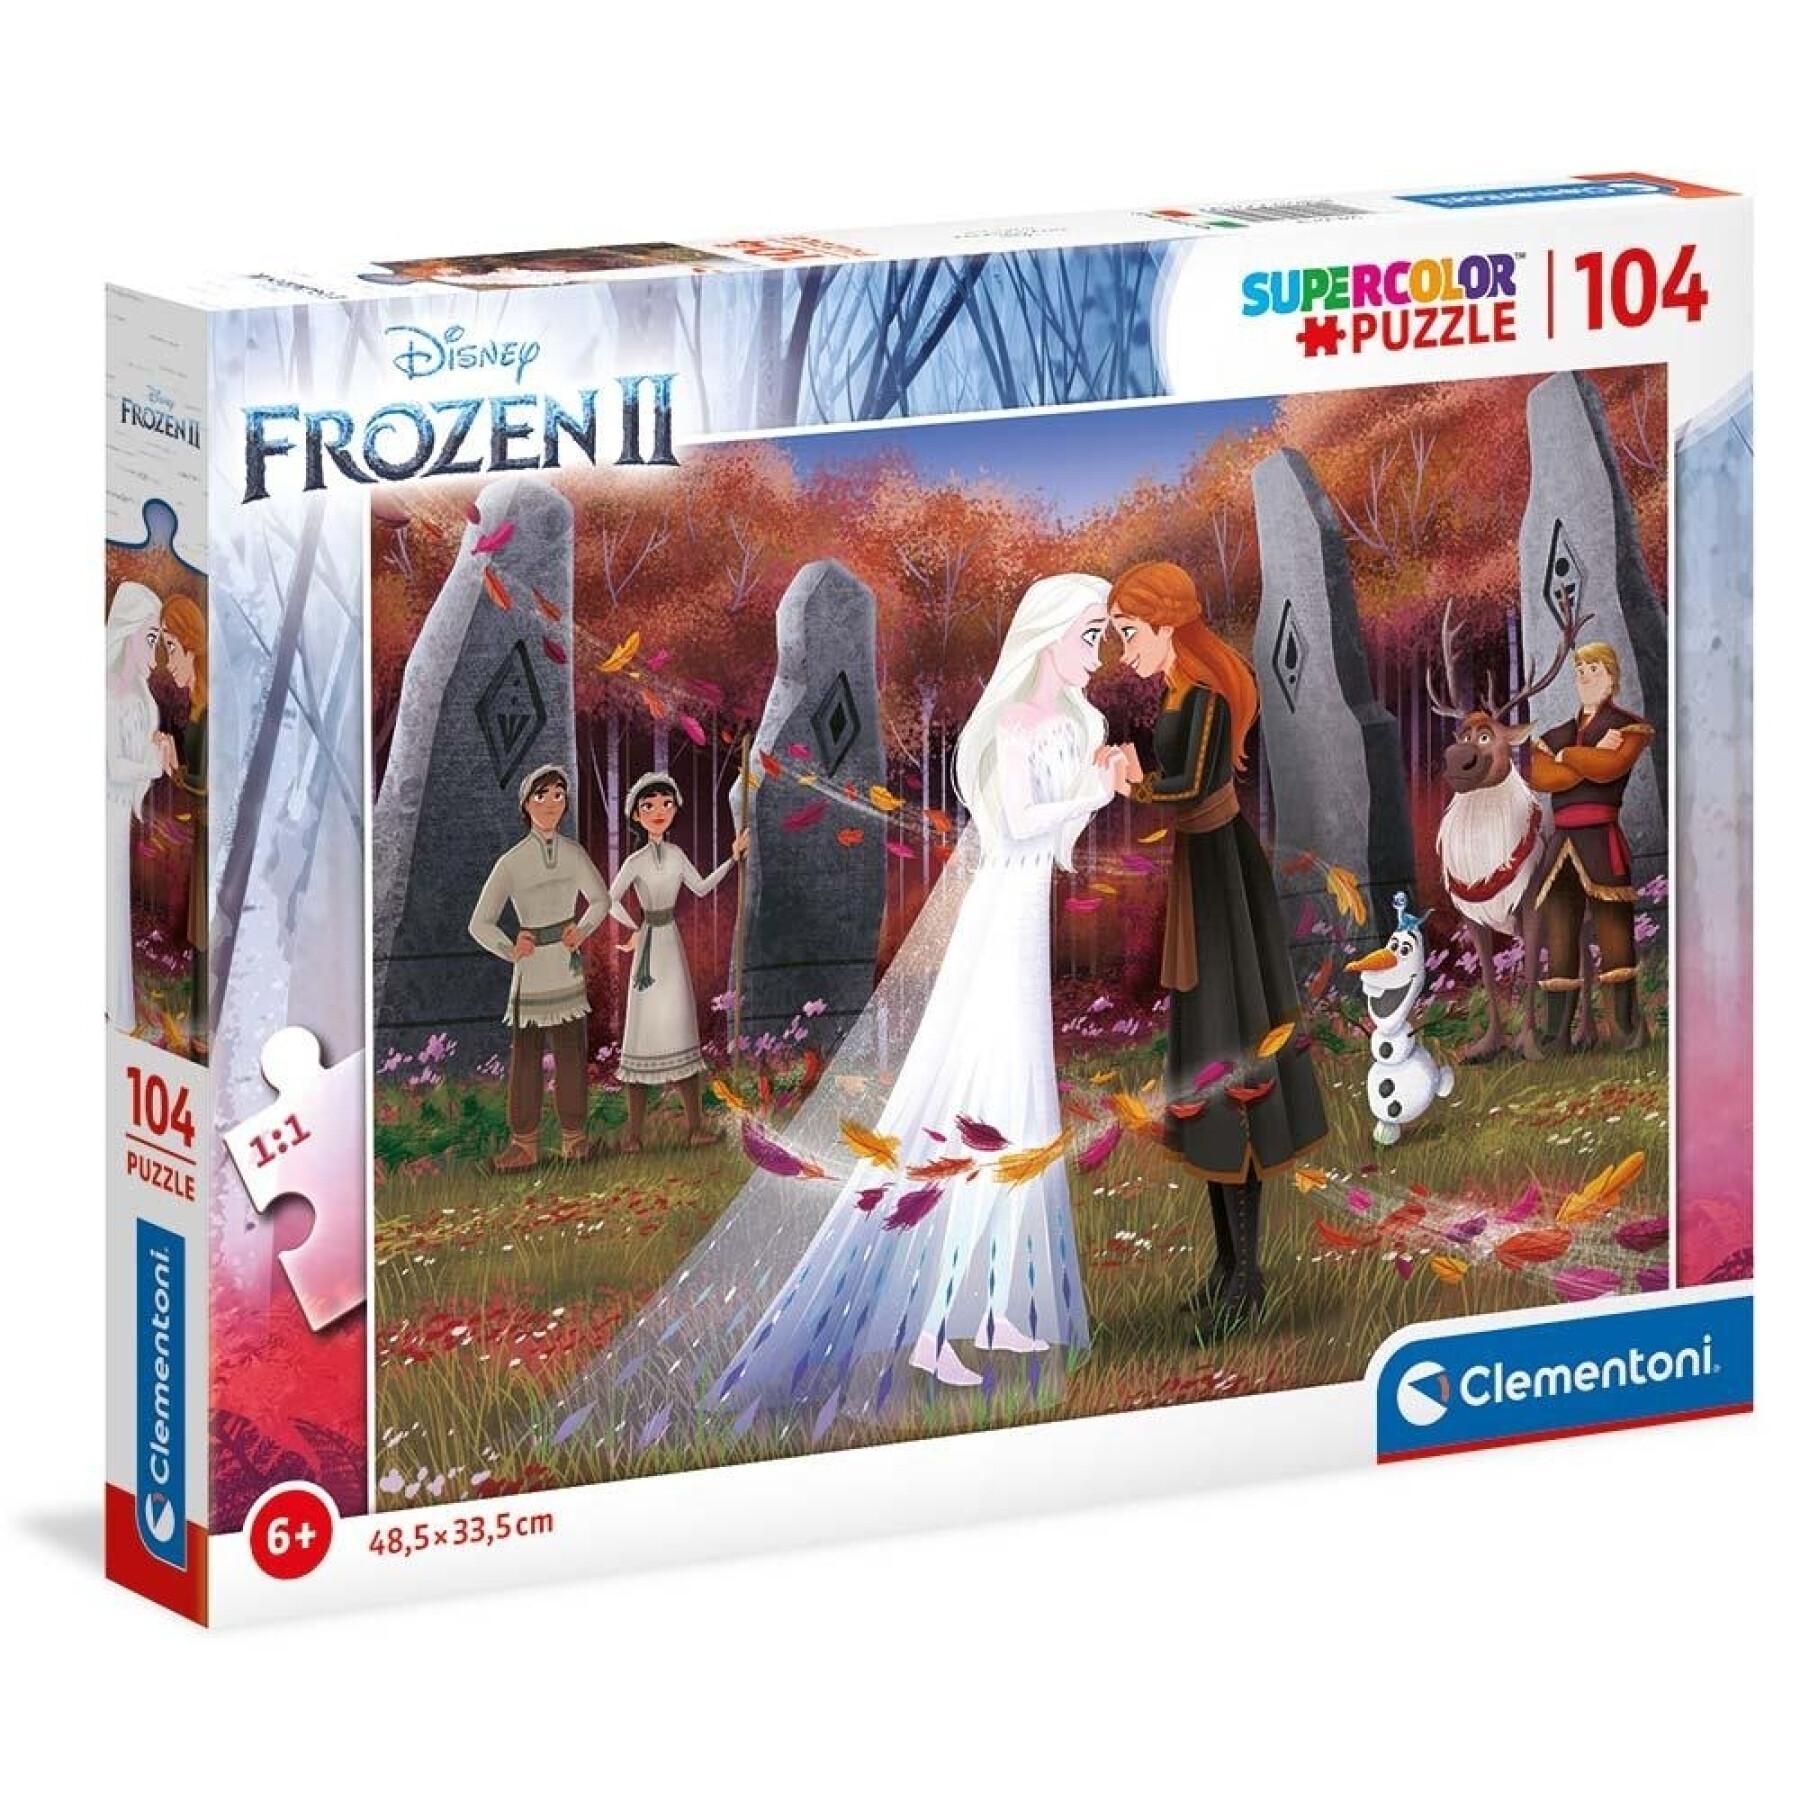 Puzzle da 104 pezzi Frozen II